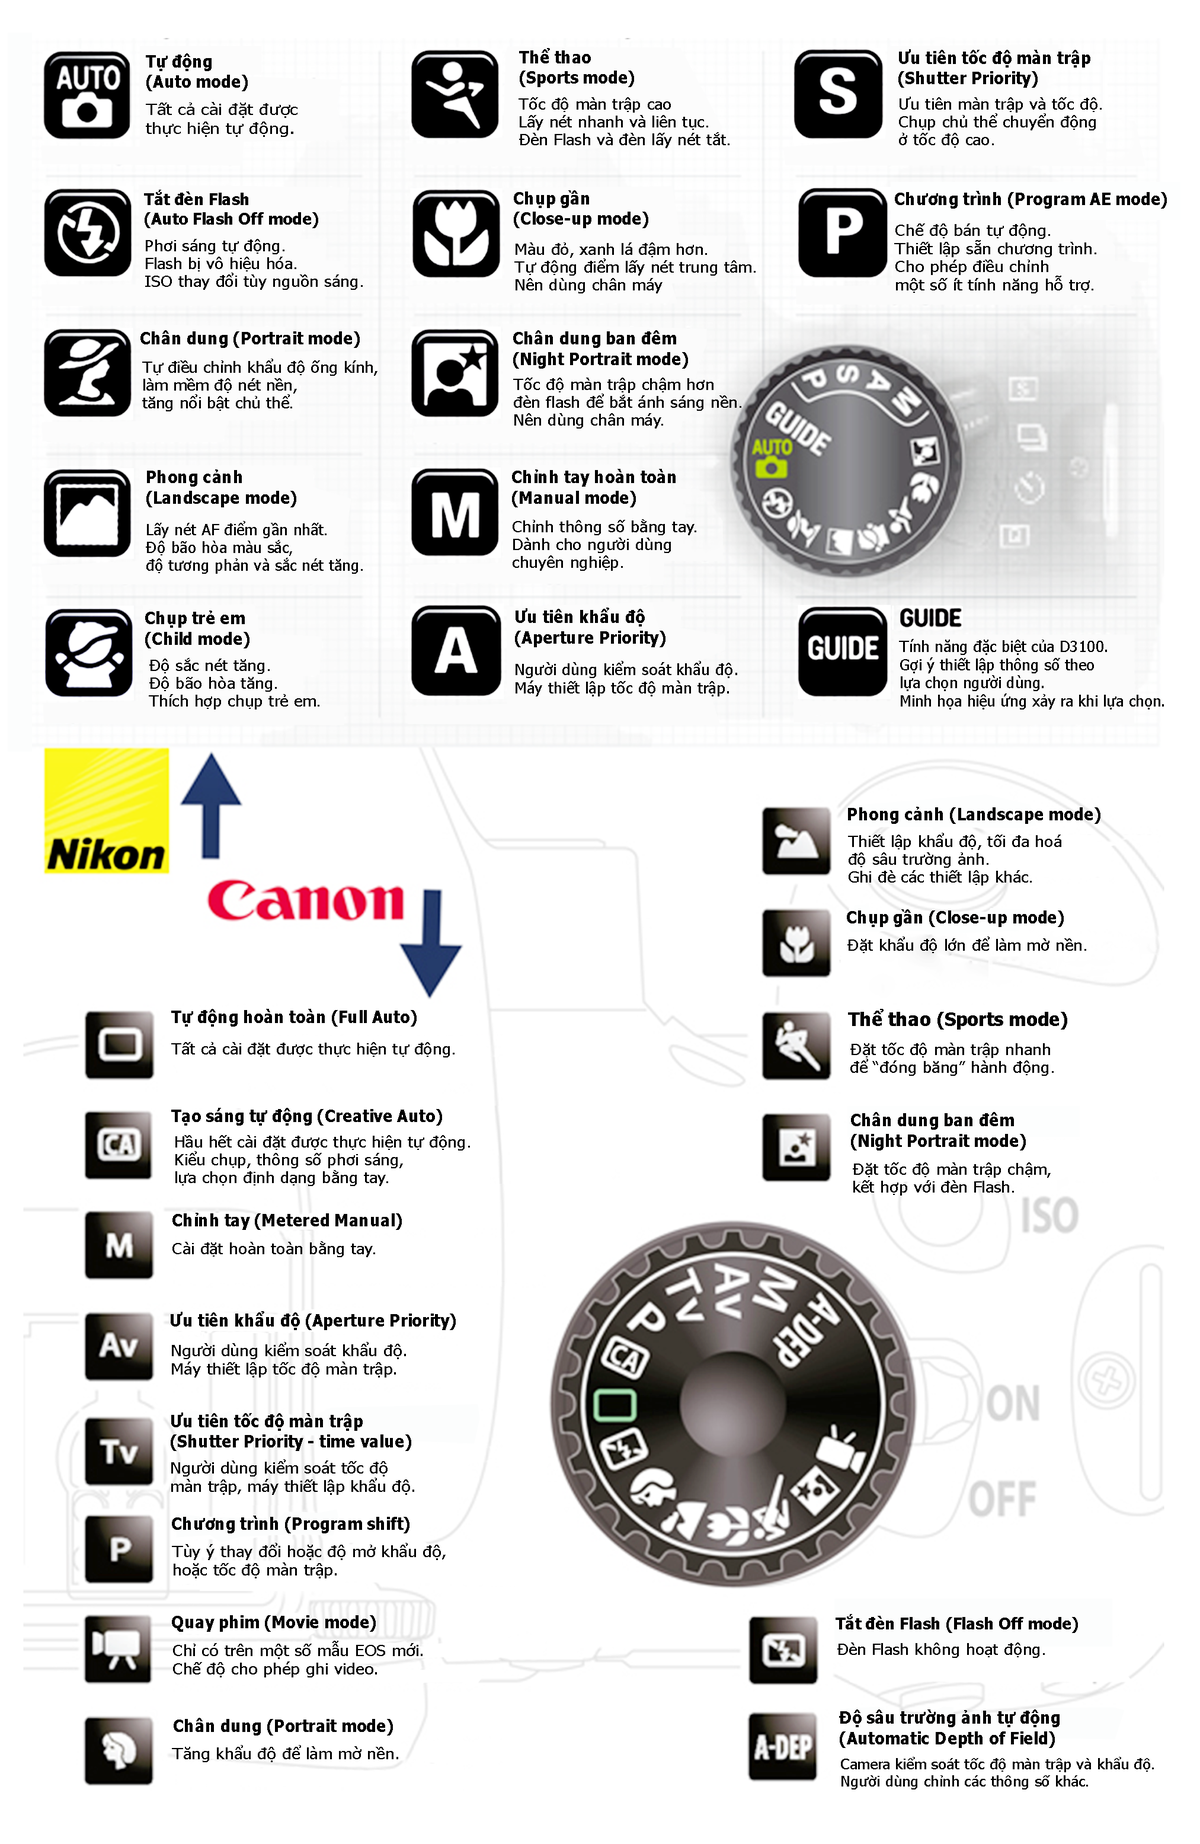 Tìm hiểu thông số trên máy ảnh Canon, Nikon